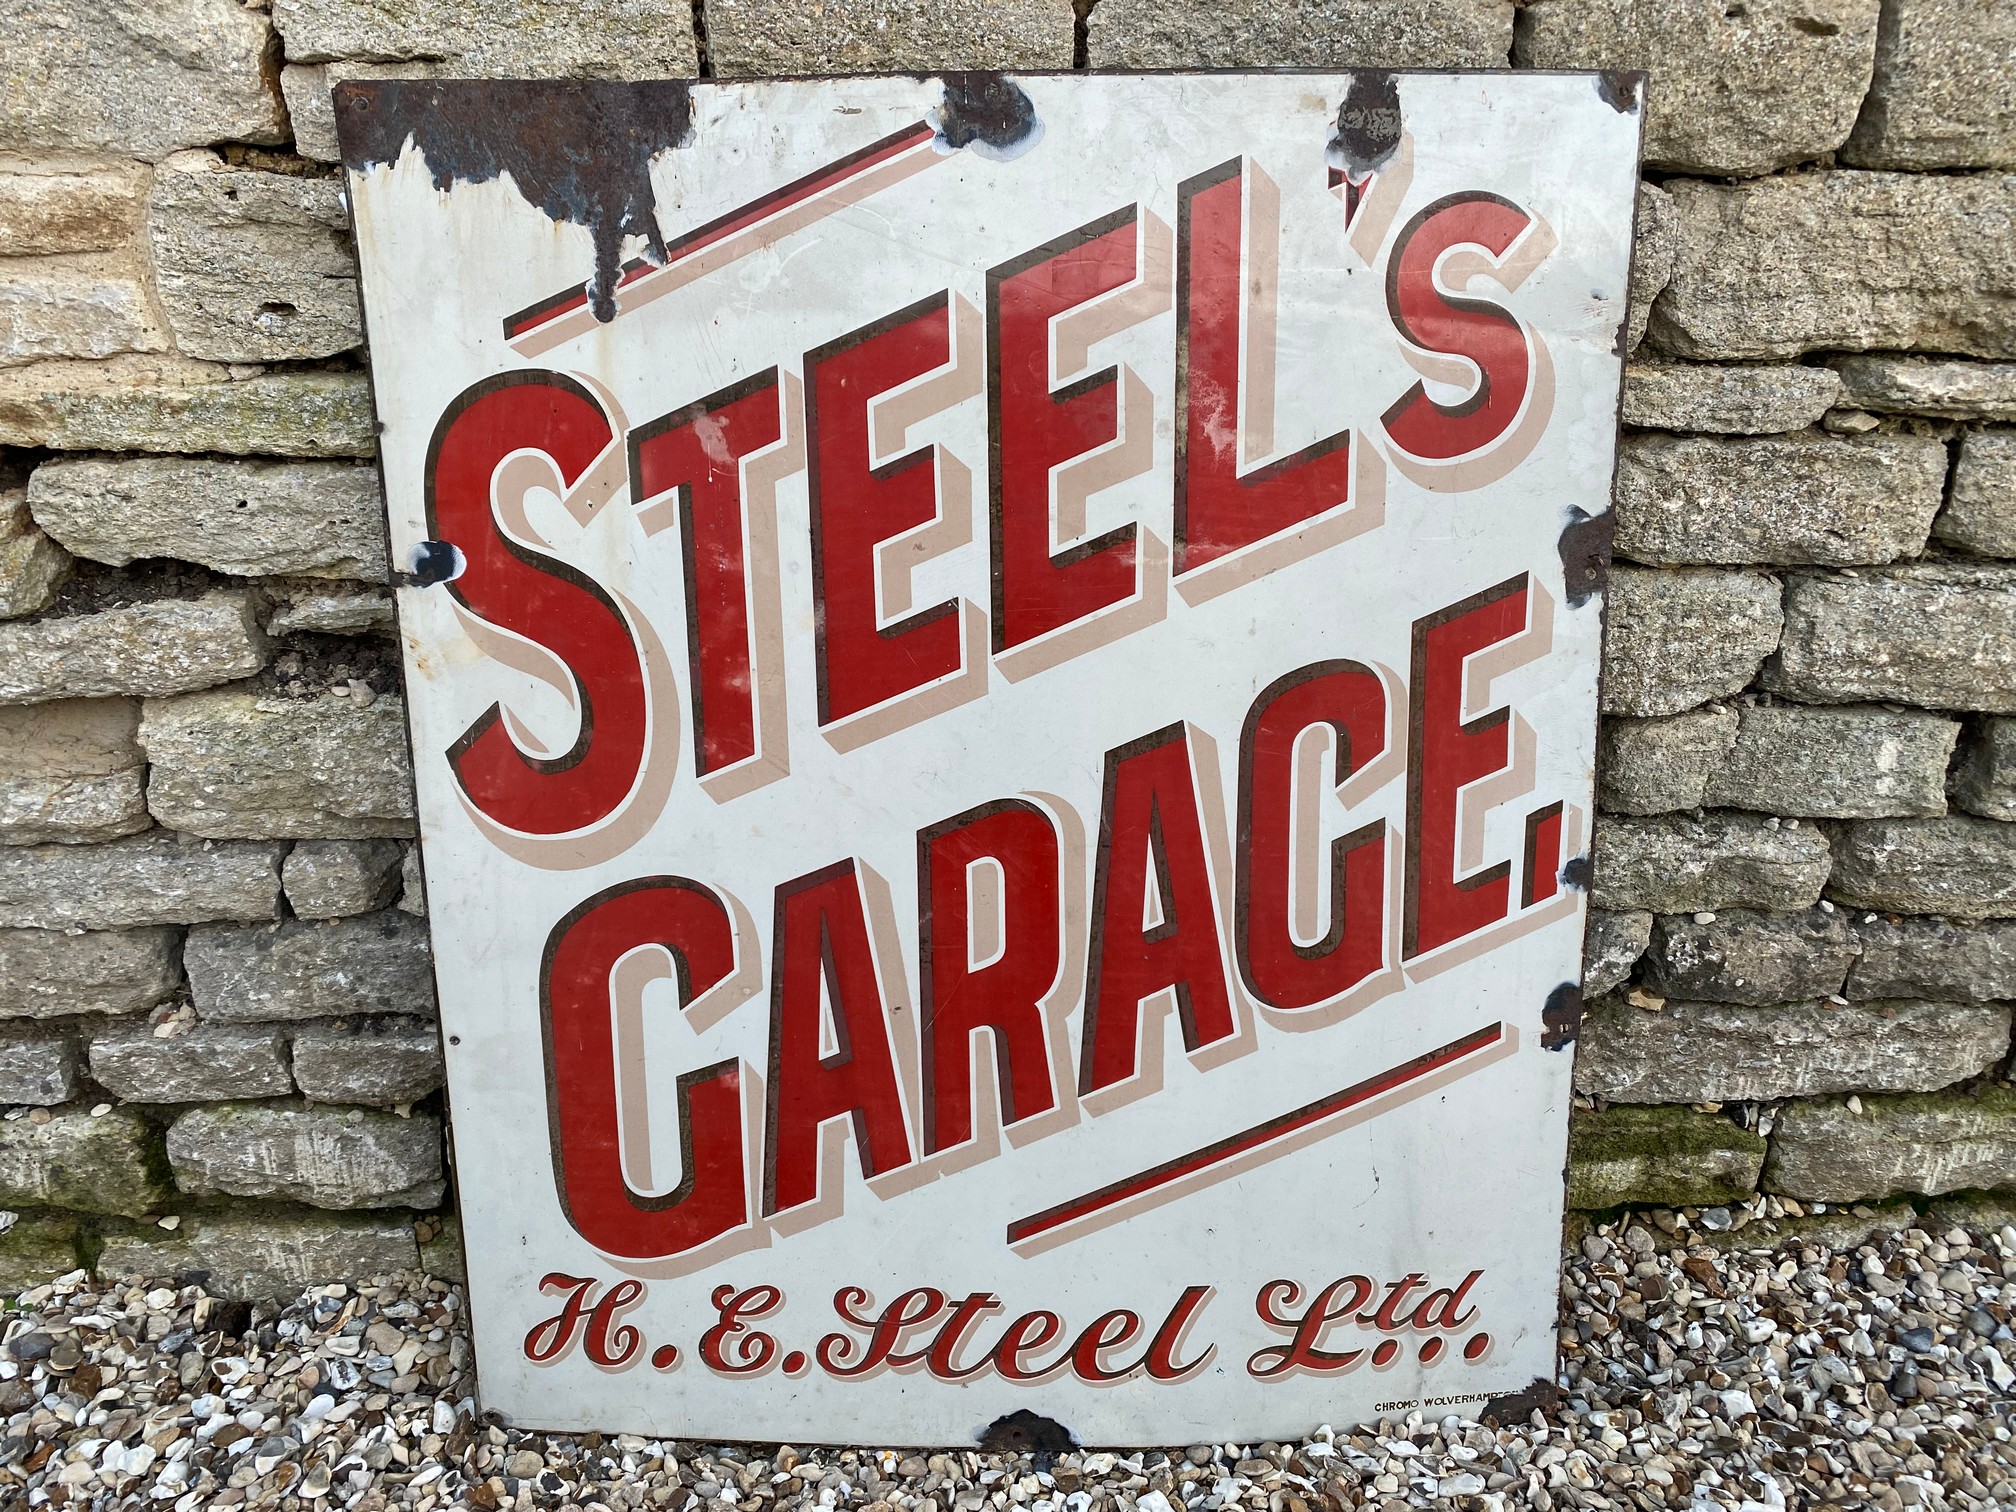 A rectangular enamel sign for Steel's Garage of Cheltenham (H.E. Steel Ltd.), made by Chromo, 36 x